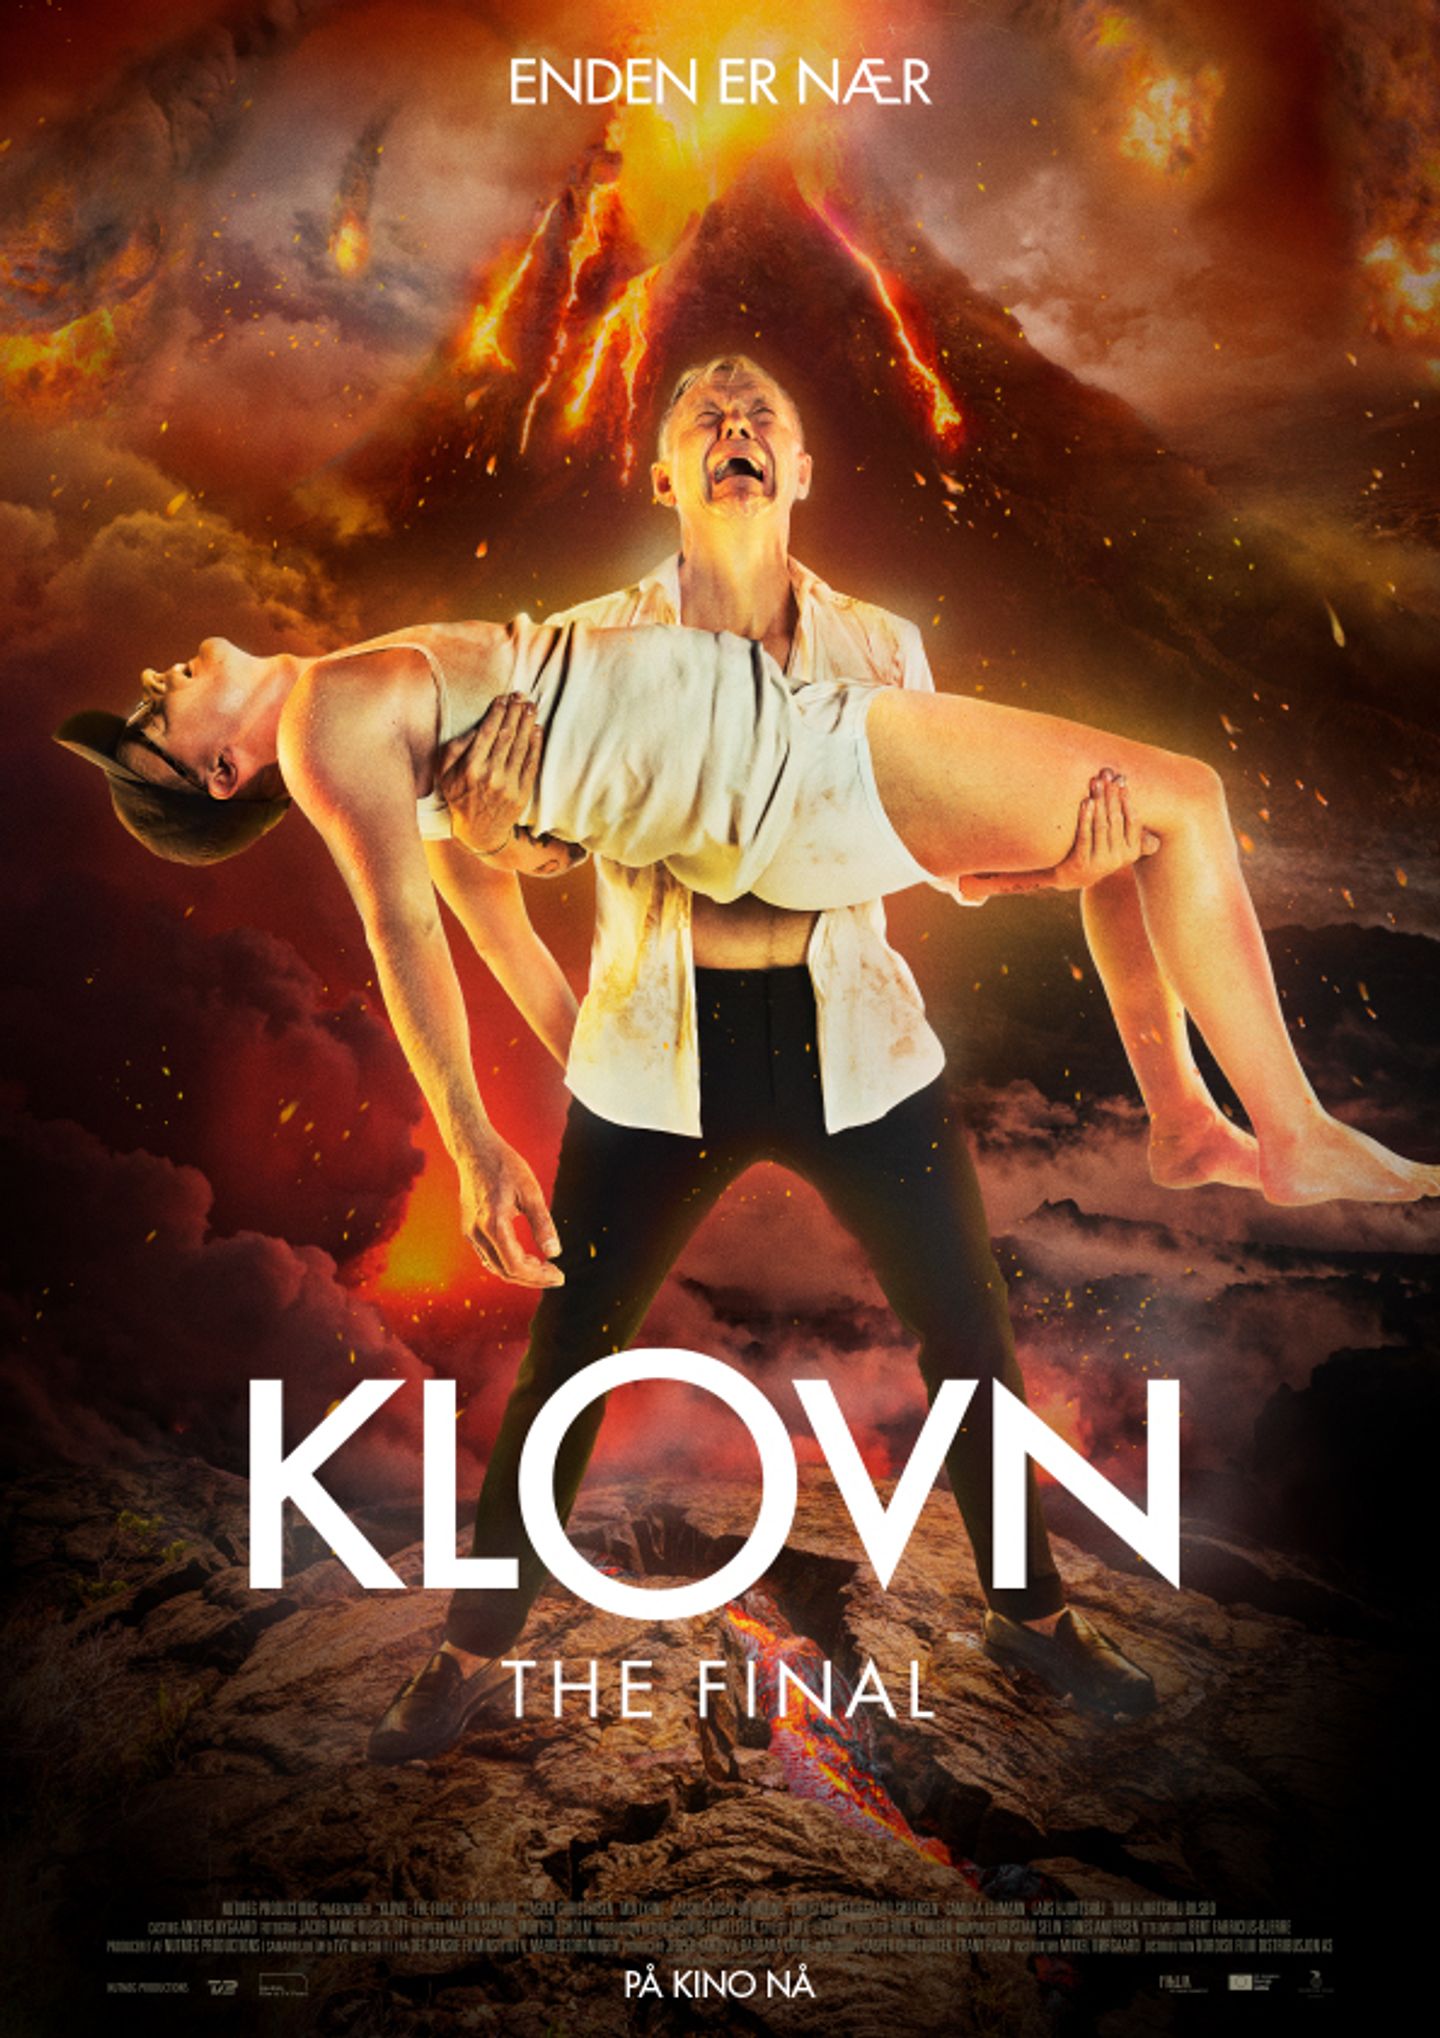 Plakat for 'Klovn 3: The Final'